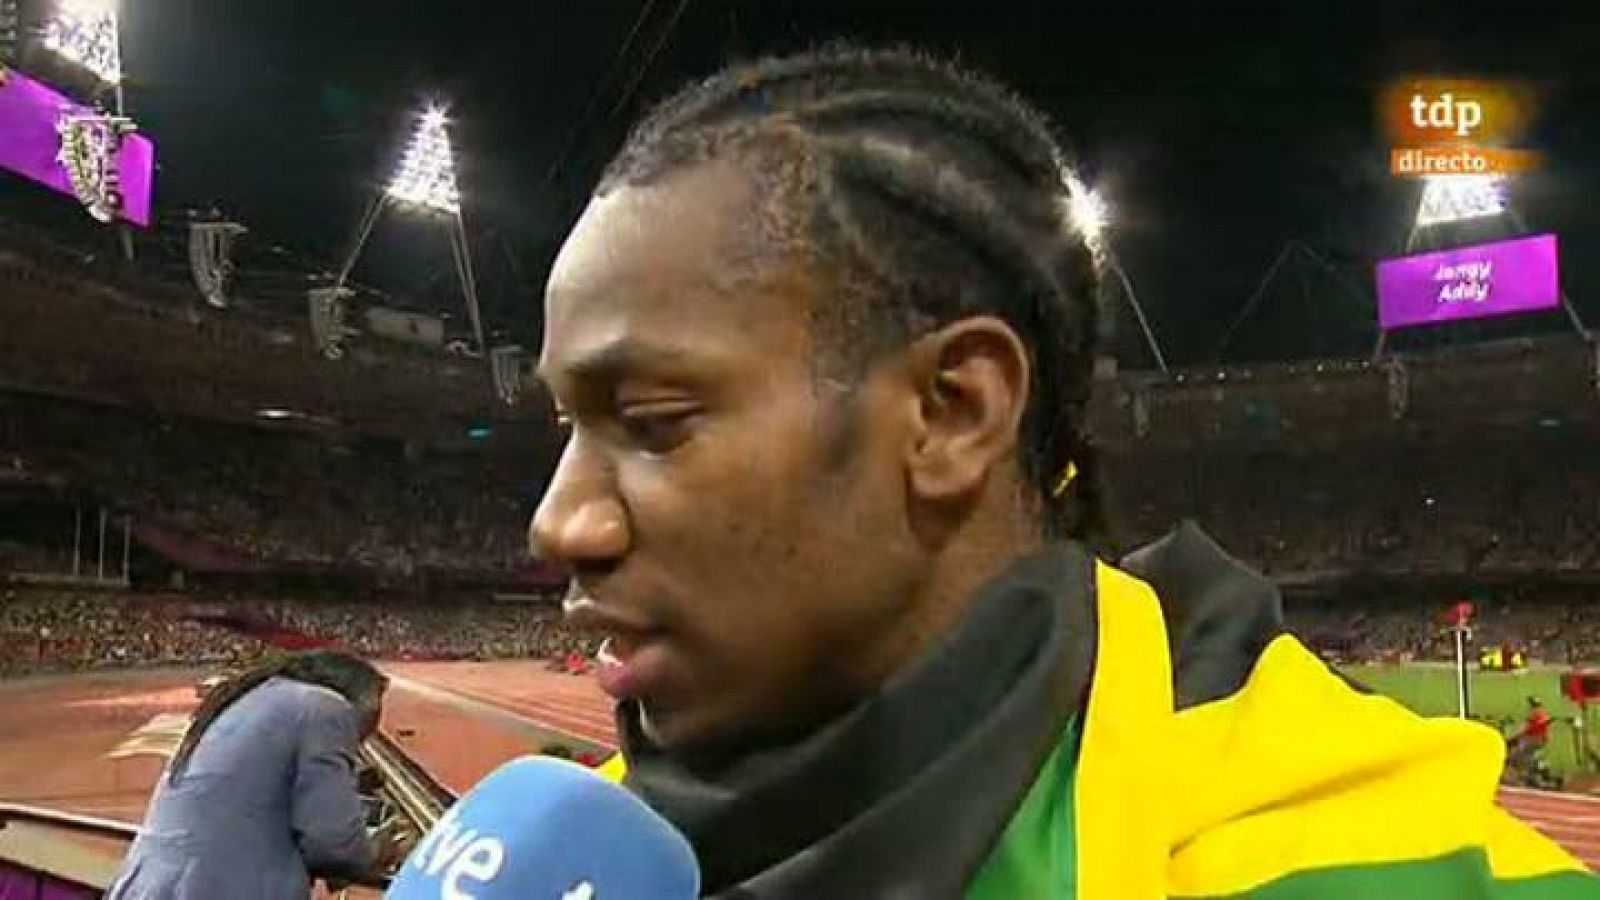 El atleta jamaicano ha coincidido con su compatriota Weir, bronce, frente a los micrófonos de TVE. Los dos han coincidido en señalar que el triplete en 200 metros lisos es "un gran día para Jamaica". Weir ha añadido que es "un honor" compartir podio